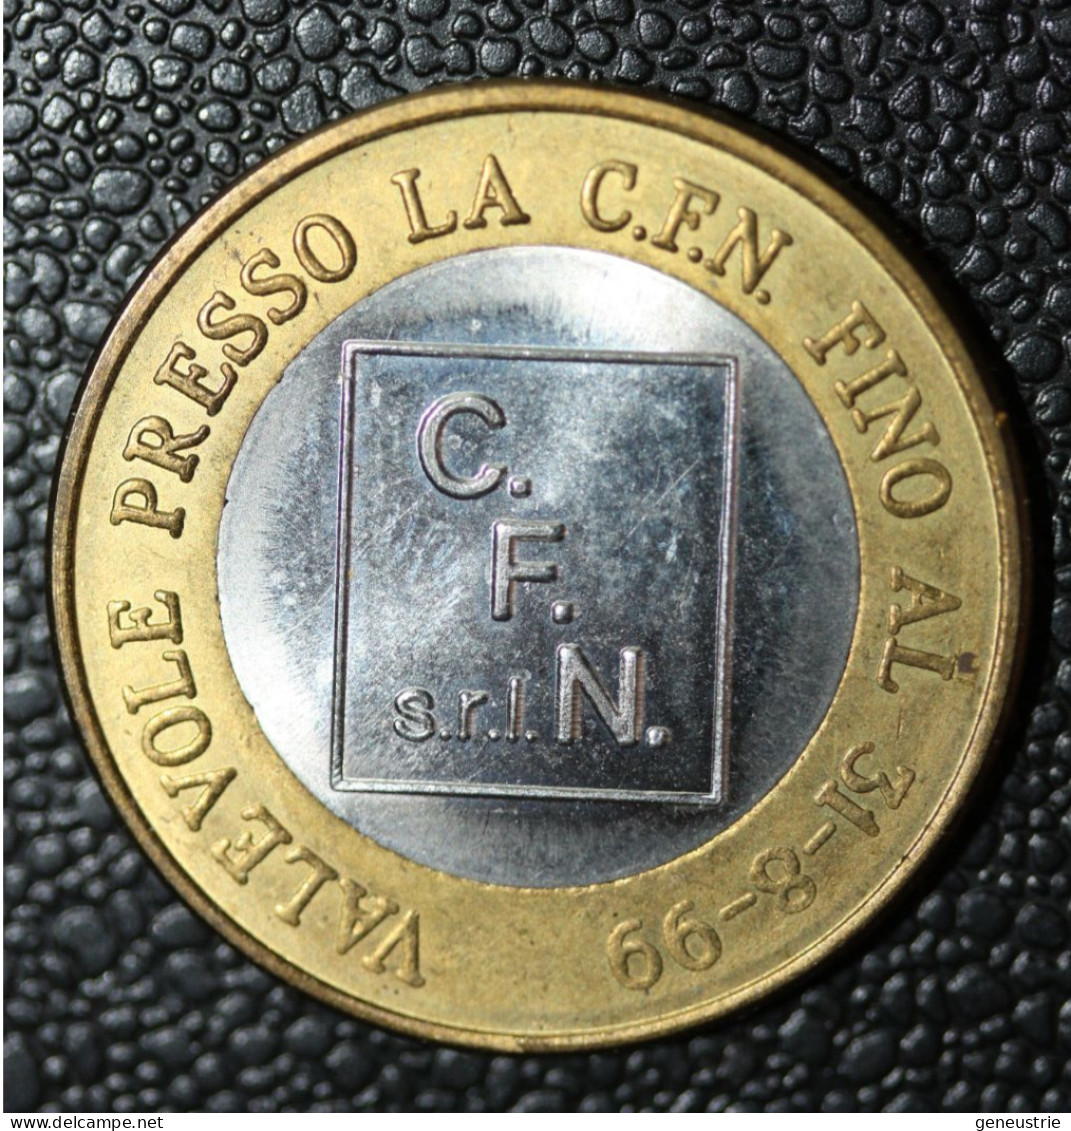 Pièce De 1 Euro Provisoire De La Société Italienne C.F.N. S.r.l. Valable Jusqu'au 31-08-1999" - Italie